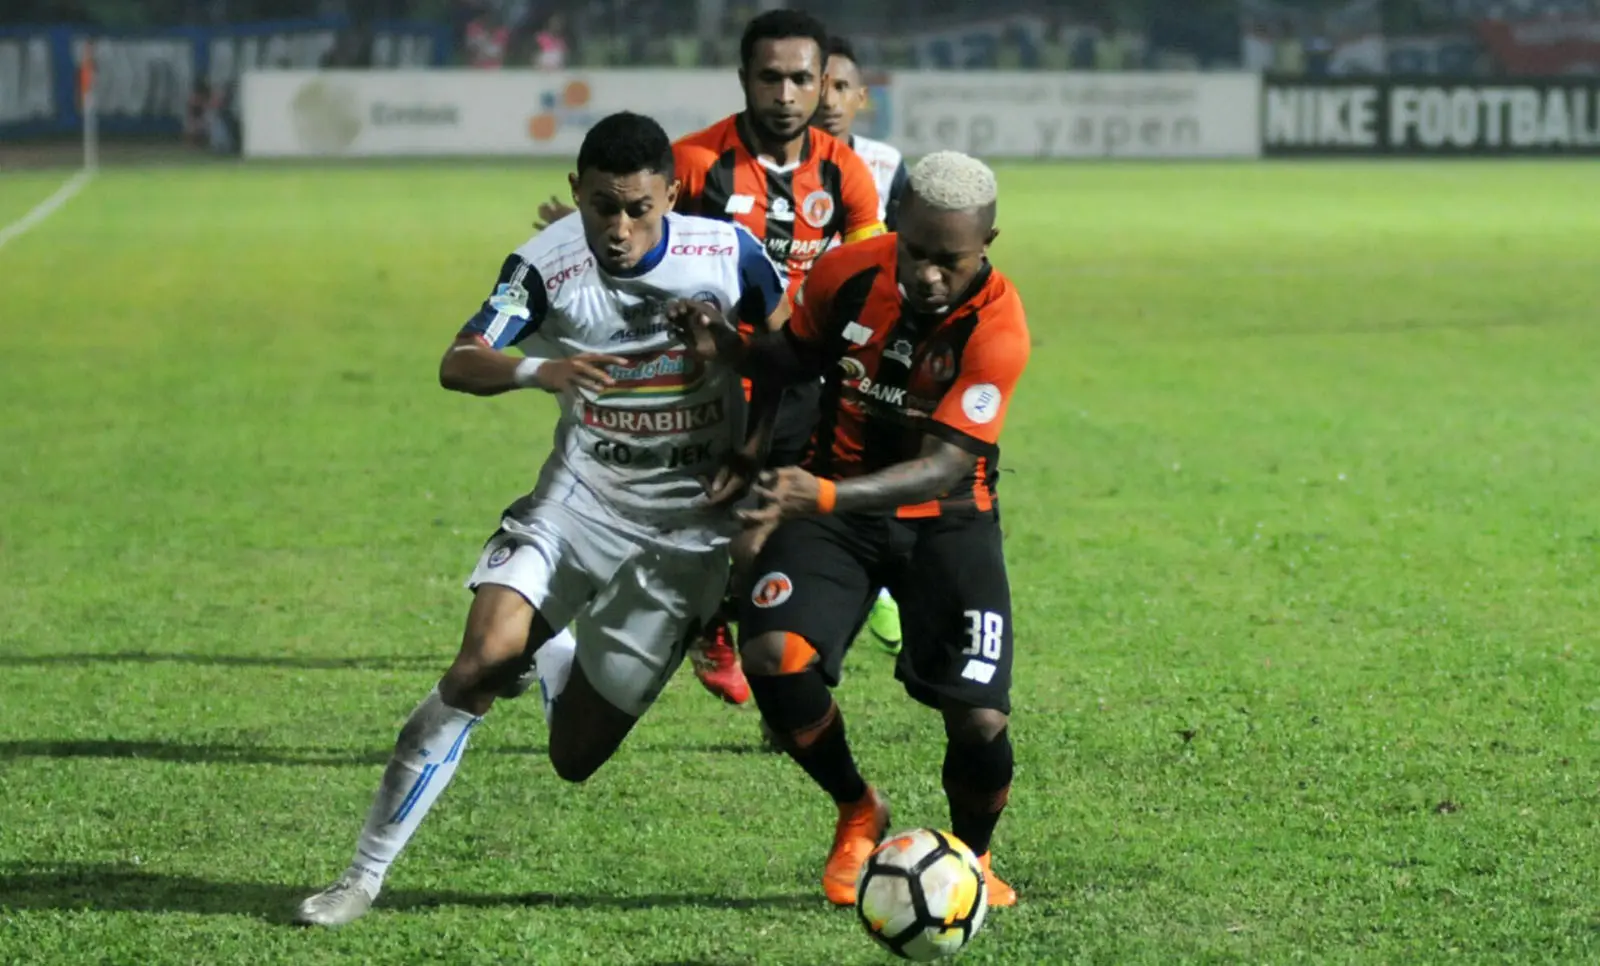 Pemain Arema, Rivaldi Bawuo, dihentikan bek Perseru pada laga di Stadion Gajayana, Malang, Rabu (6/6/2018). (Bola.com/Iwan Setiawan)